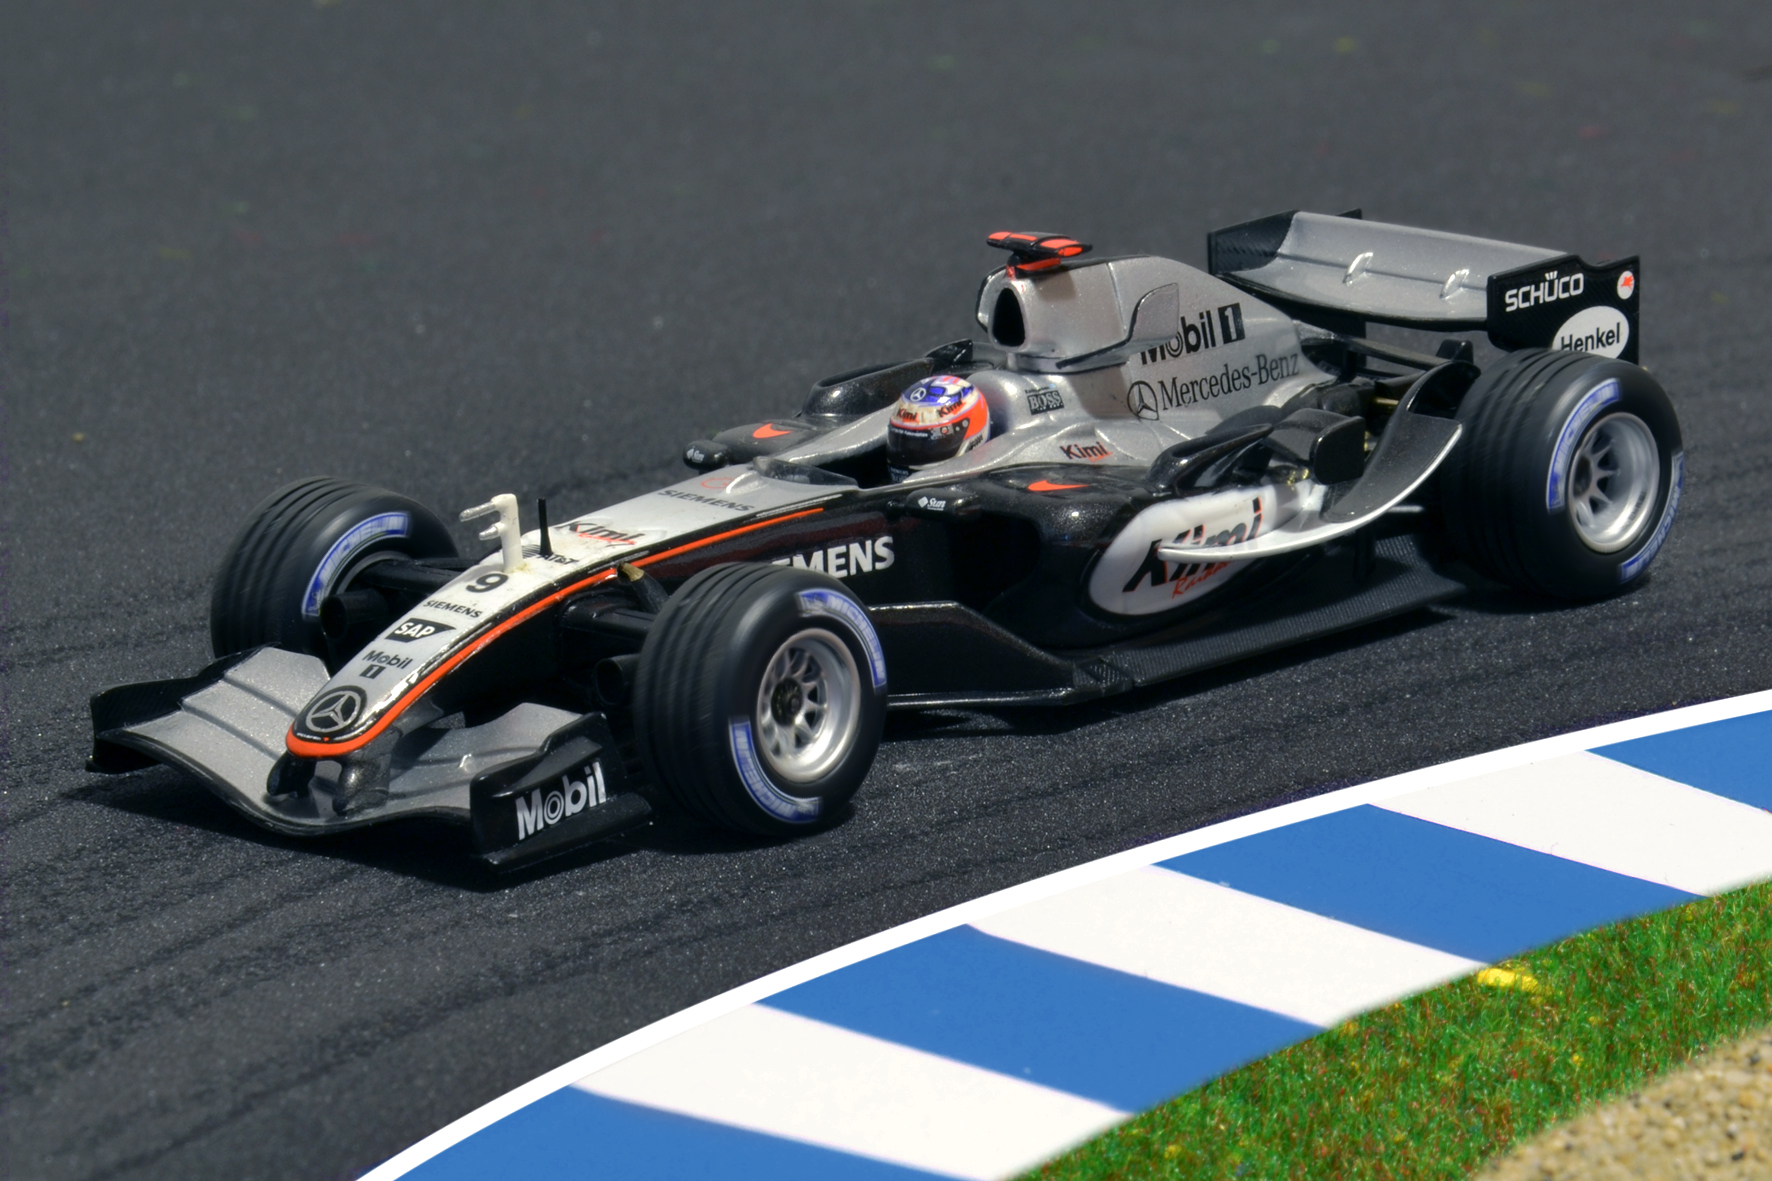 McLaren MP4-20 Kimi Räikkönen 2005 - Minichamps 1:43